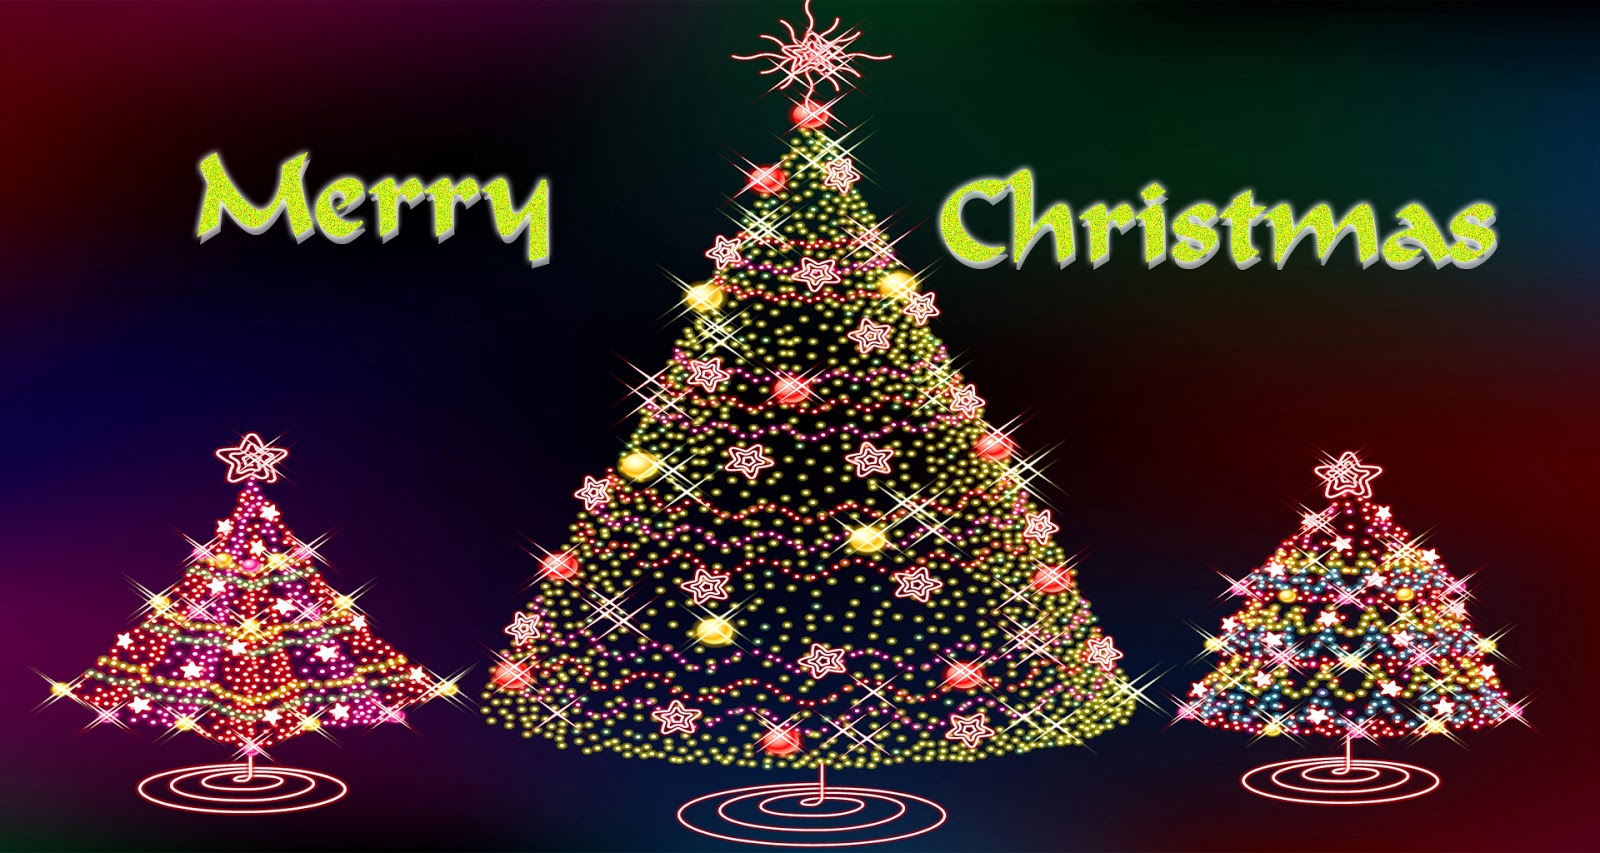 クリスマスの壁紙1080p,クリスマスツリー,クリスマスの飾り,クリスマスオーナメント,クリスマス,木